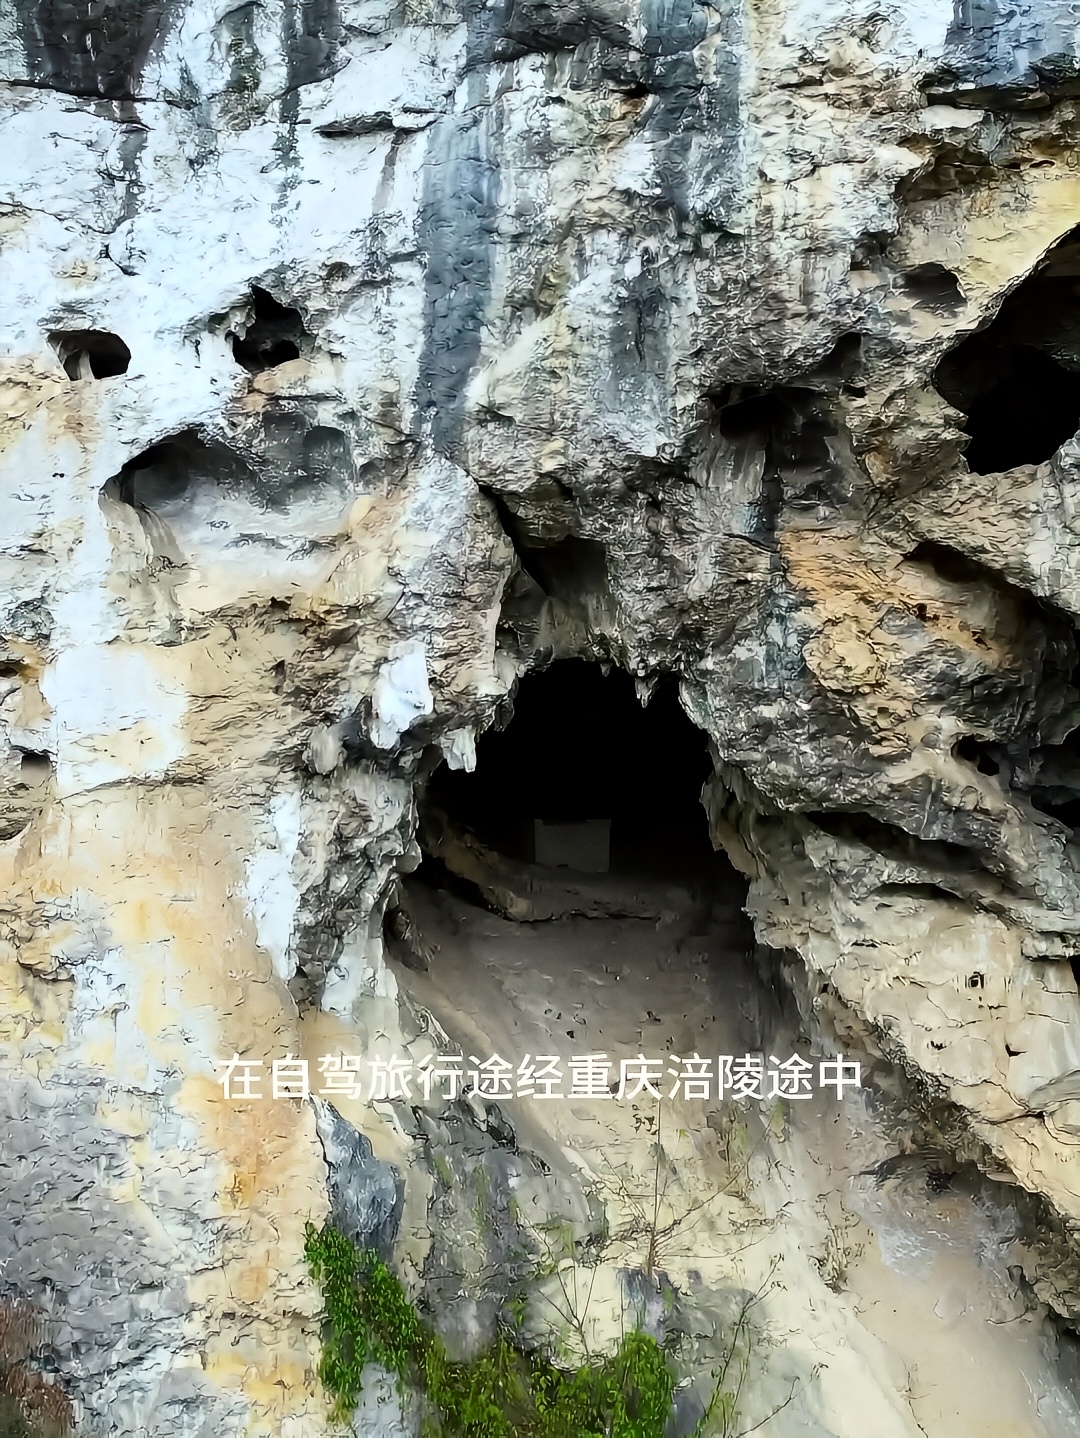 重庆涪陵乌江崖壁之上发现神秘山洞，洞口居然摆放着一个石雕的石匣子，山洞中究竟隐藏着什么样的秘密。#探